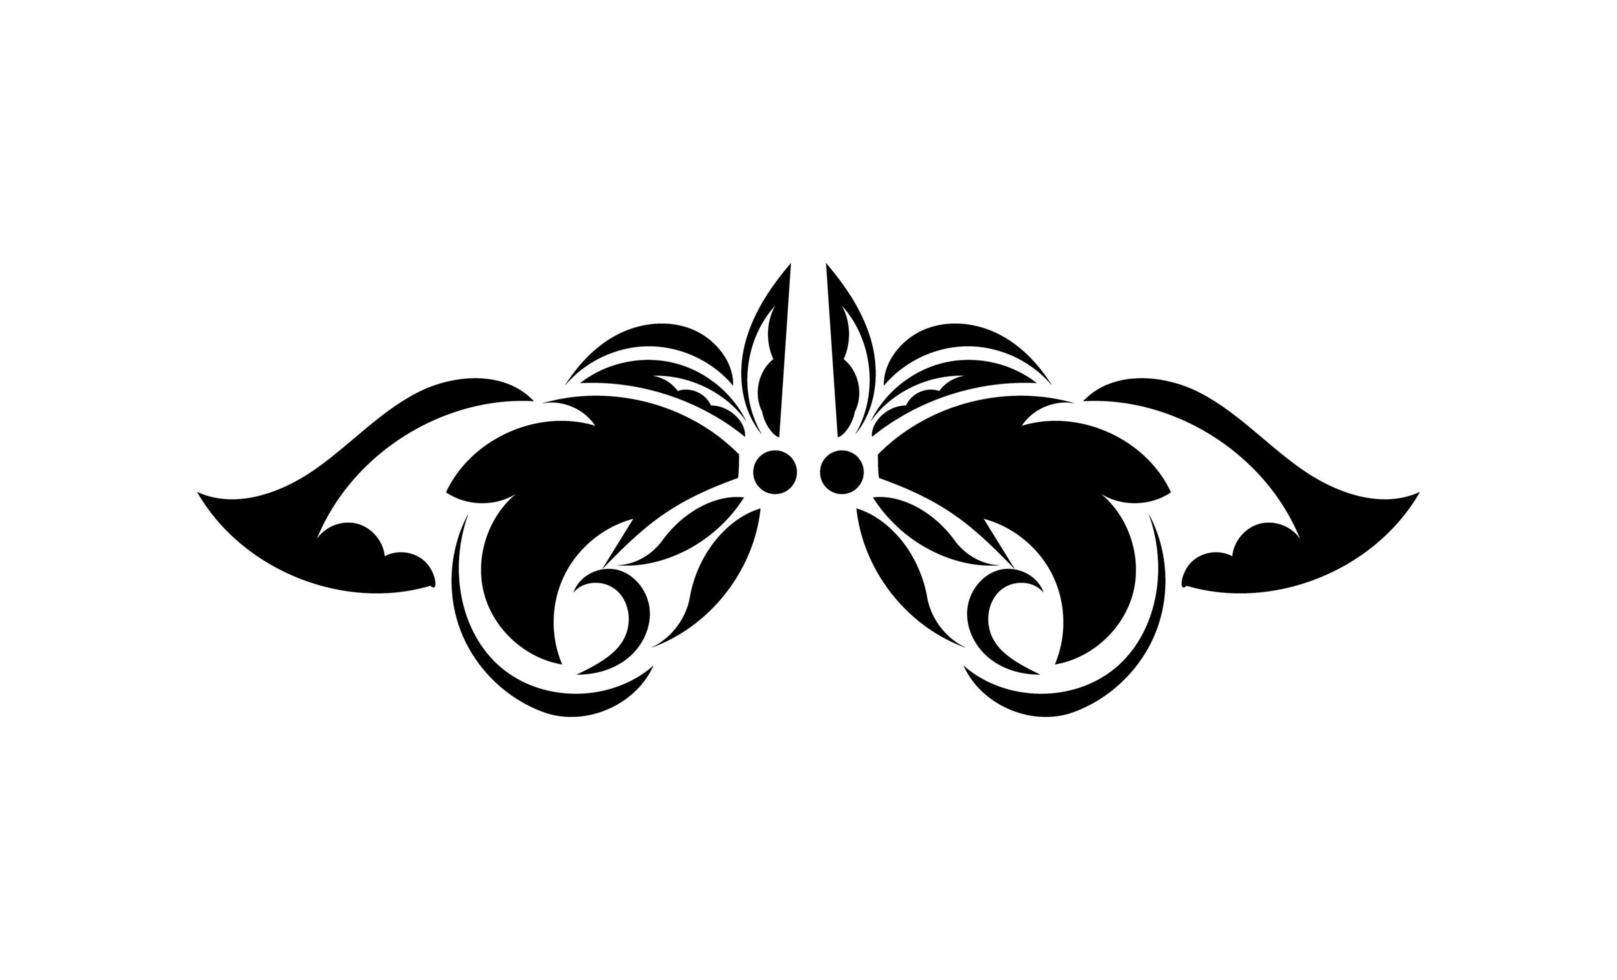 ornamento floreale del monogramma del bordo della struttura vittoriana barocca dell'annata. tatuaggio in bianco e nero filigrana vettore calligrafico scudo araldico swirl